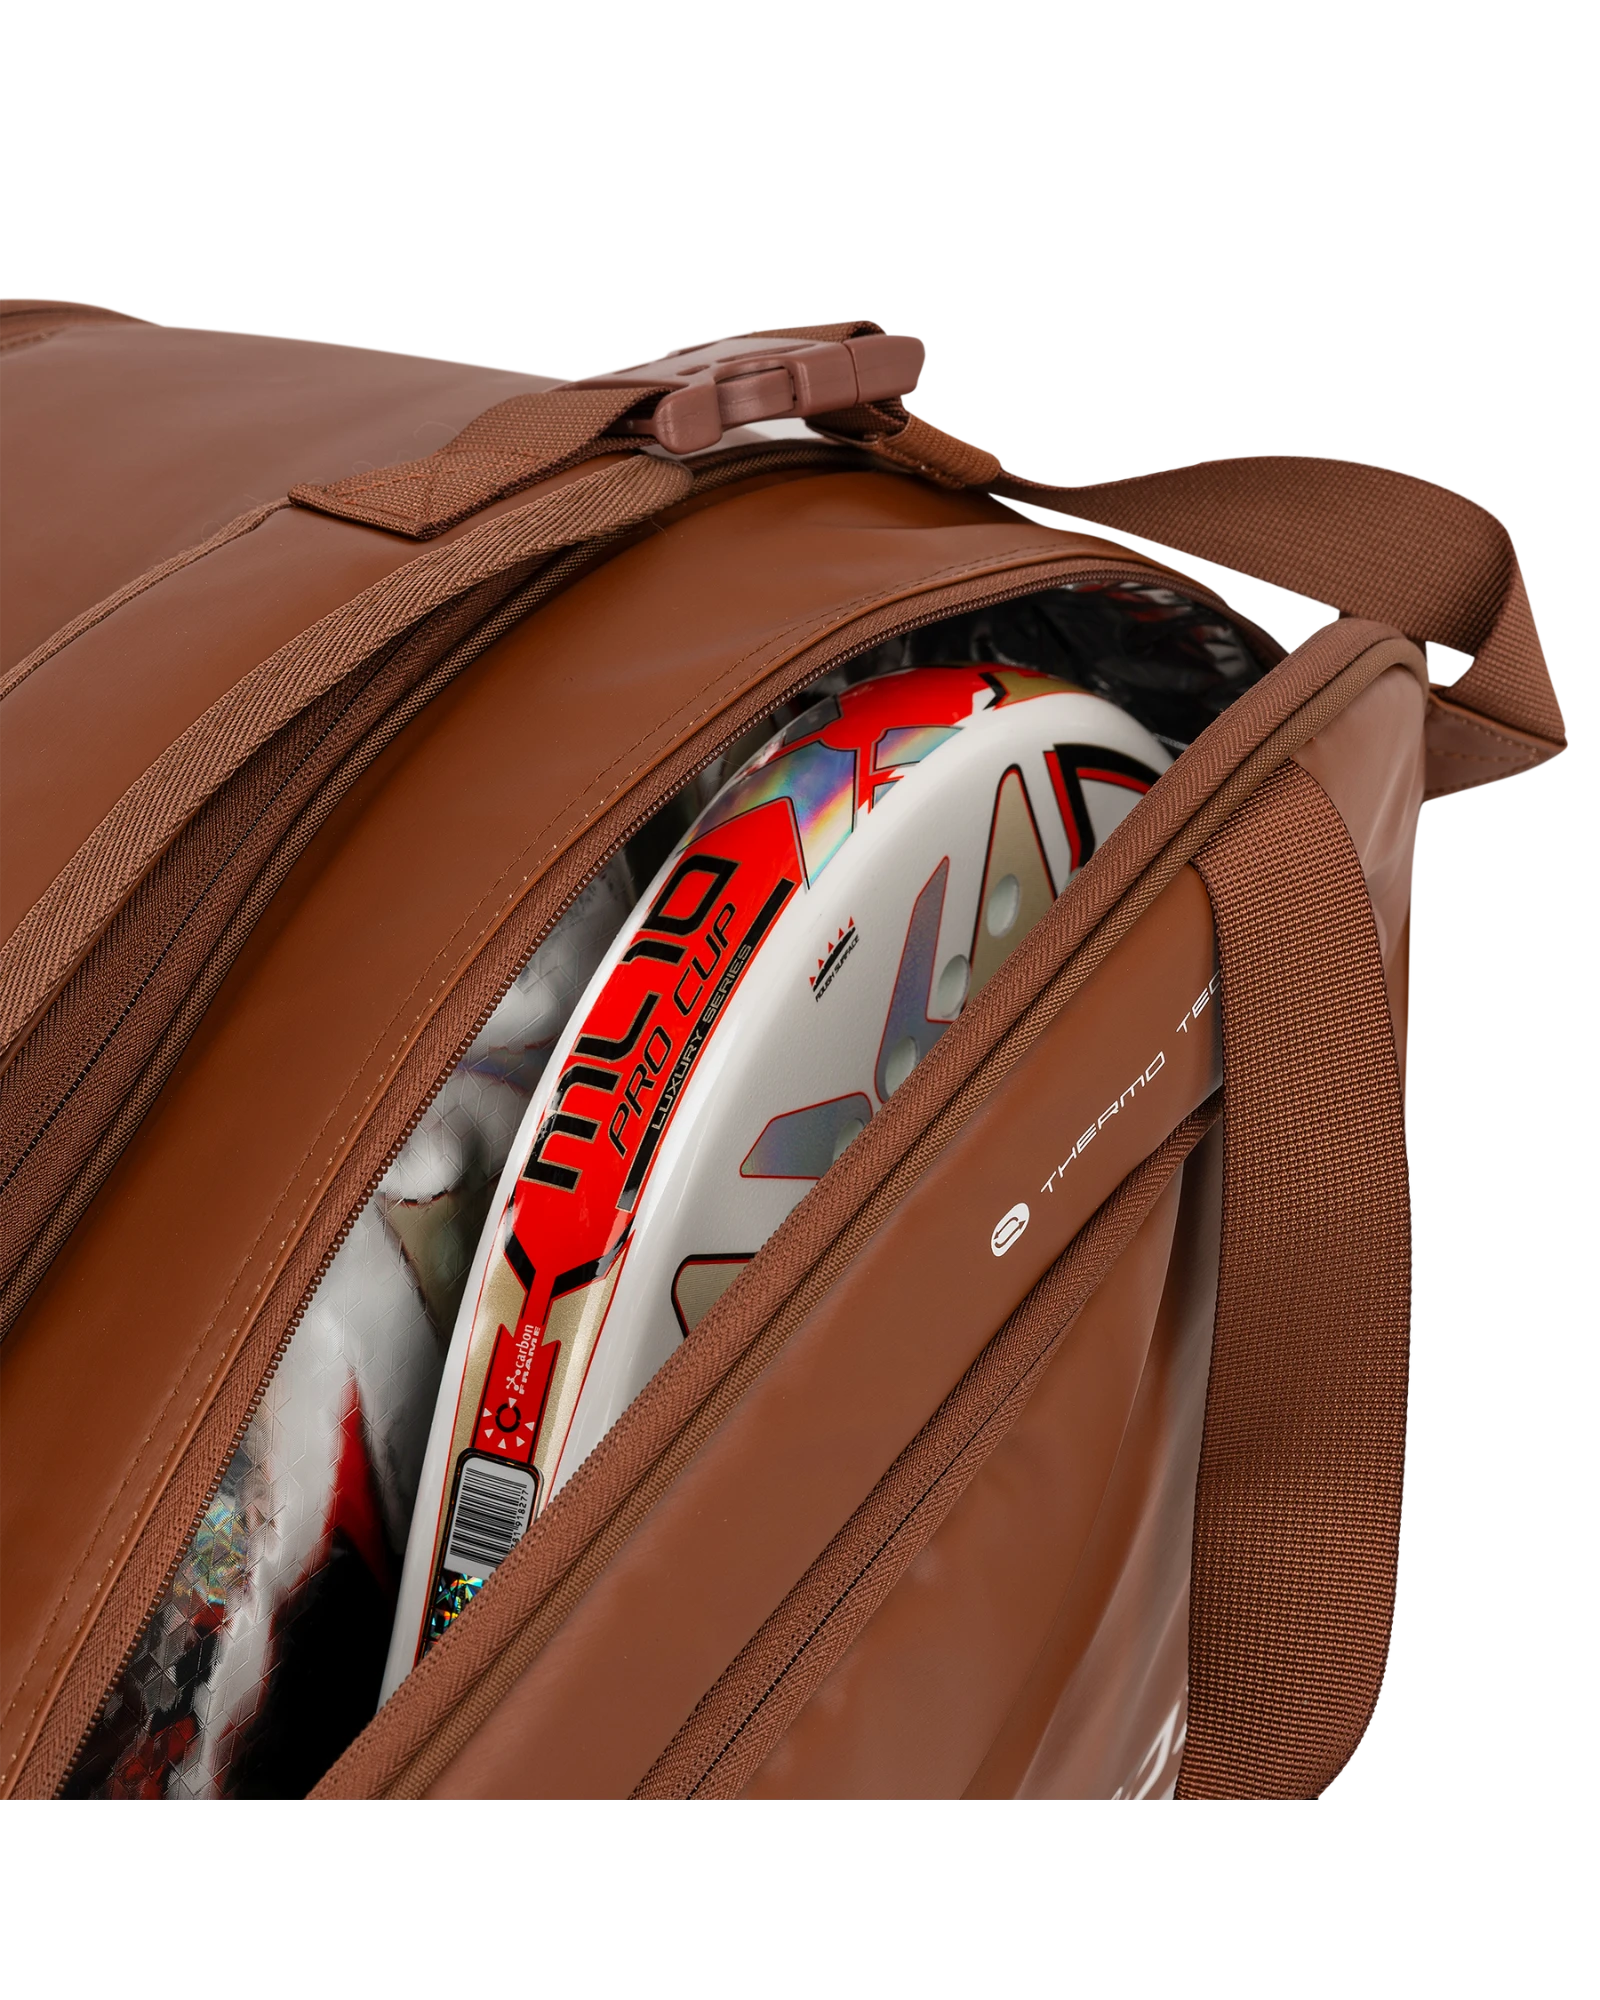 The Nox Pro Series Camel Padel Bag